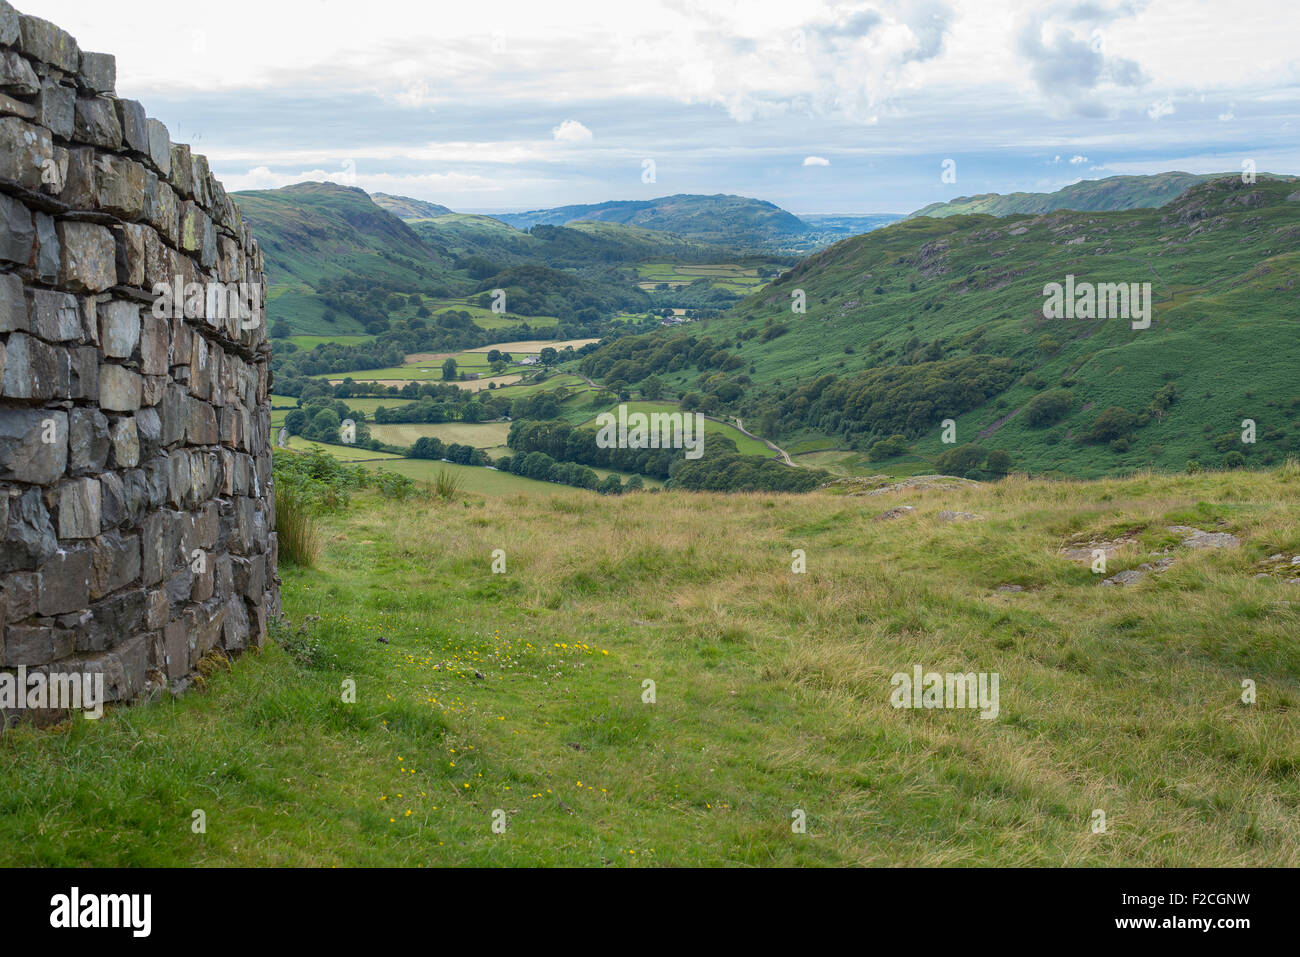 Hardknott römischen Kastells befindet sich auf dem Harknott Pass im Eskdale Tal im englischen Lake District, Cumbria, Großbritannien. Stockfoto